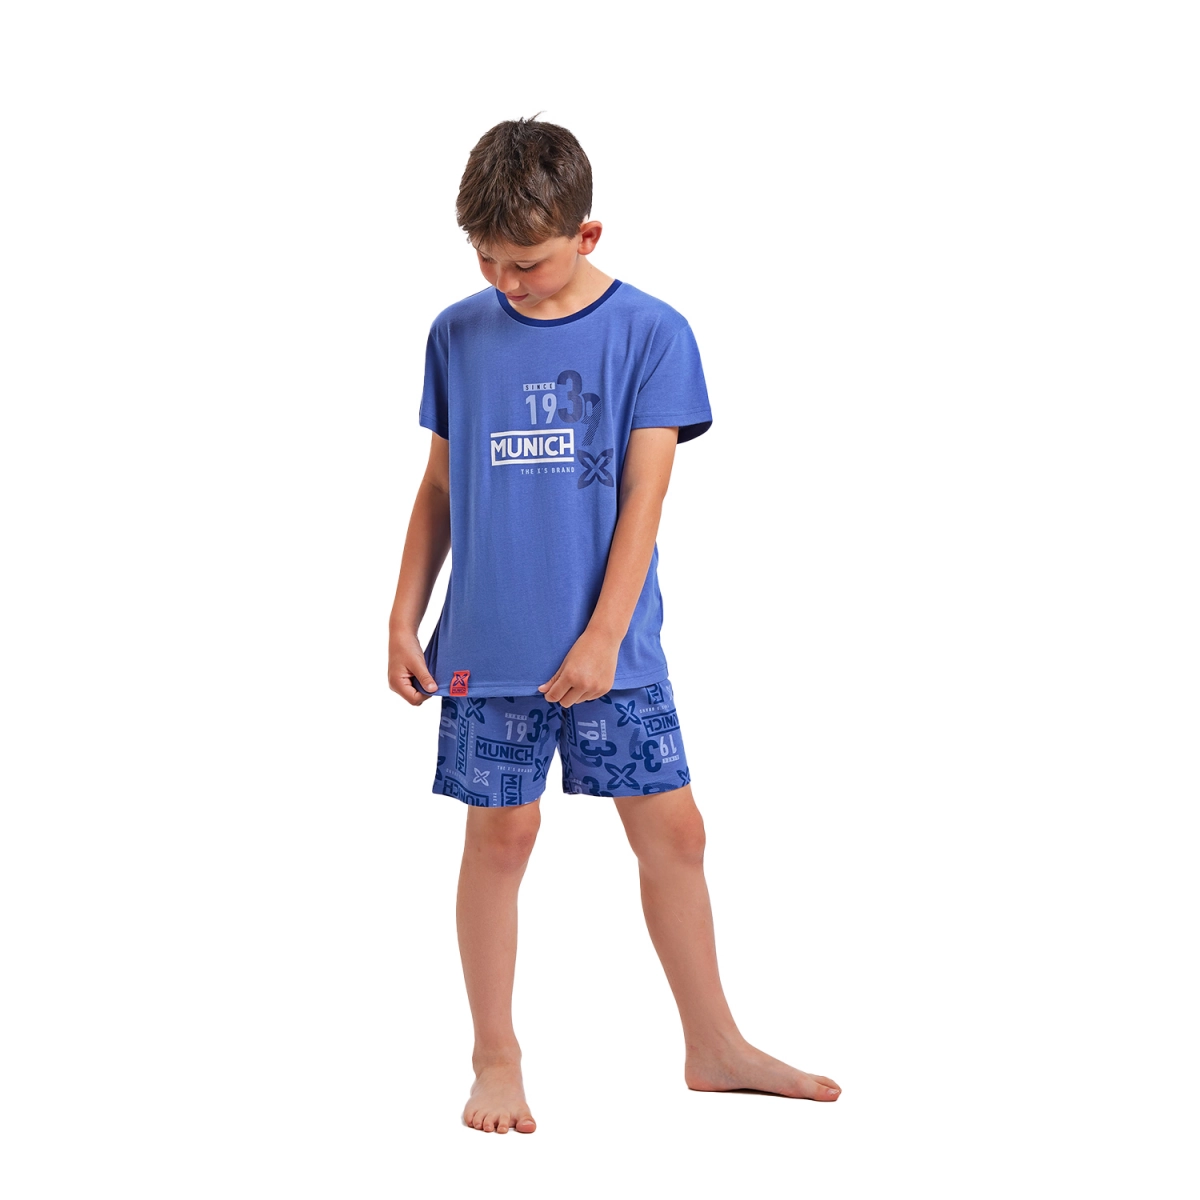 Pijama de manga corta y cuello redondo Munich DH1351 niño Talla: 3 AÑOS Color: Azul DH1351.3 AÑOS